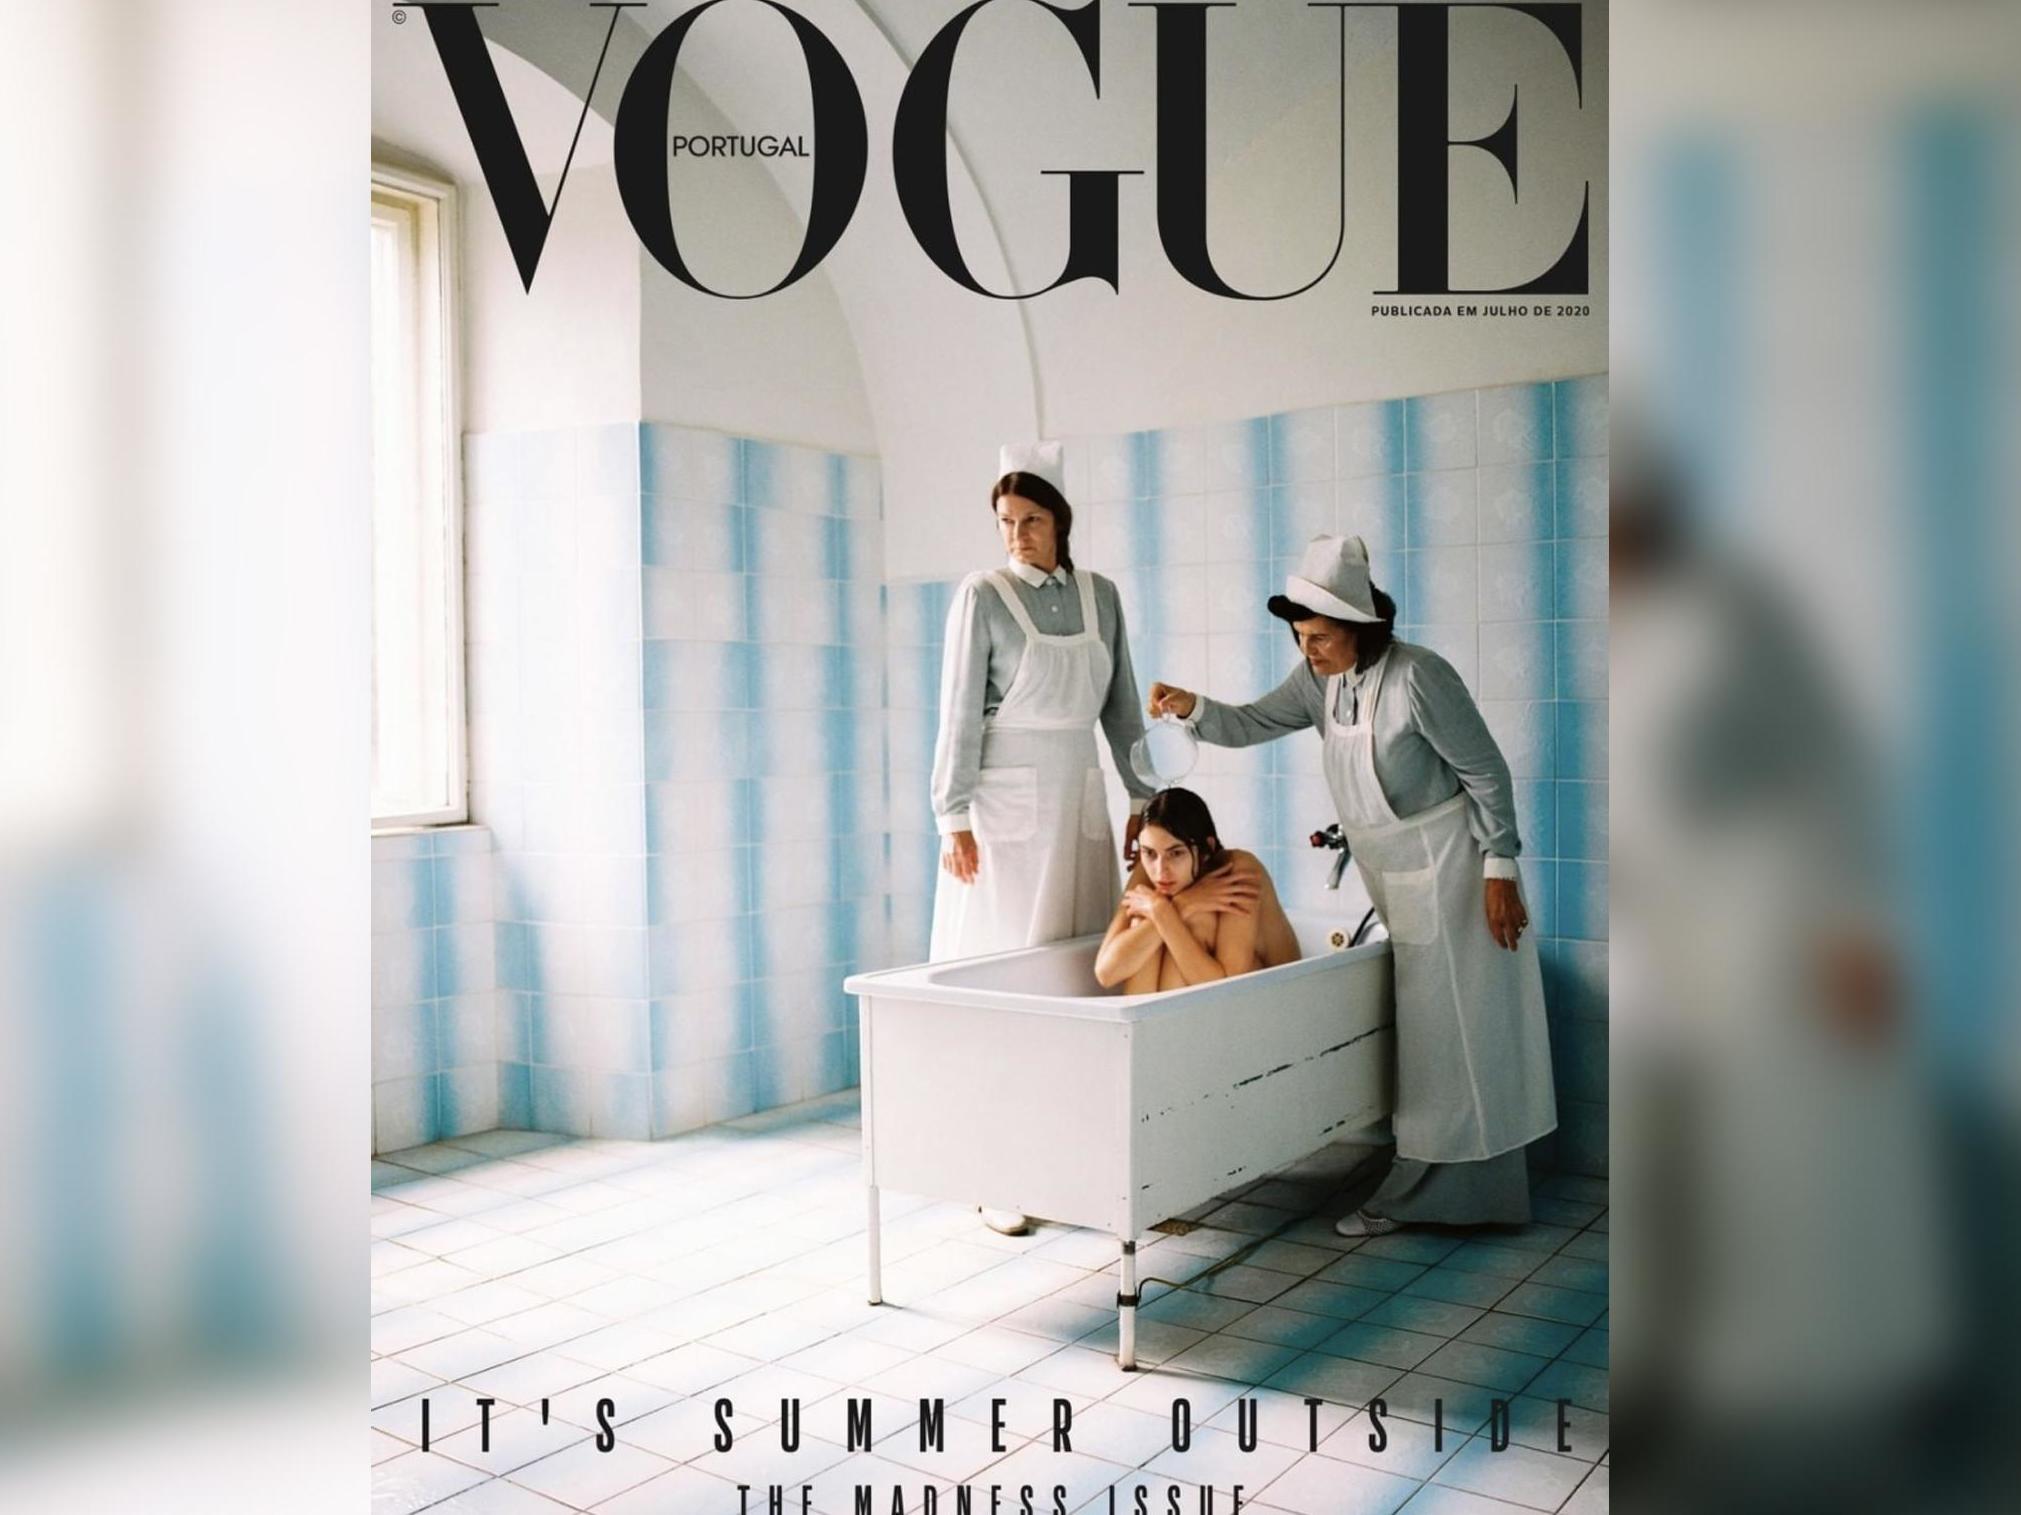 Vogue Portugal Magazine November 2020